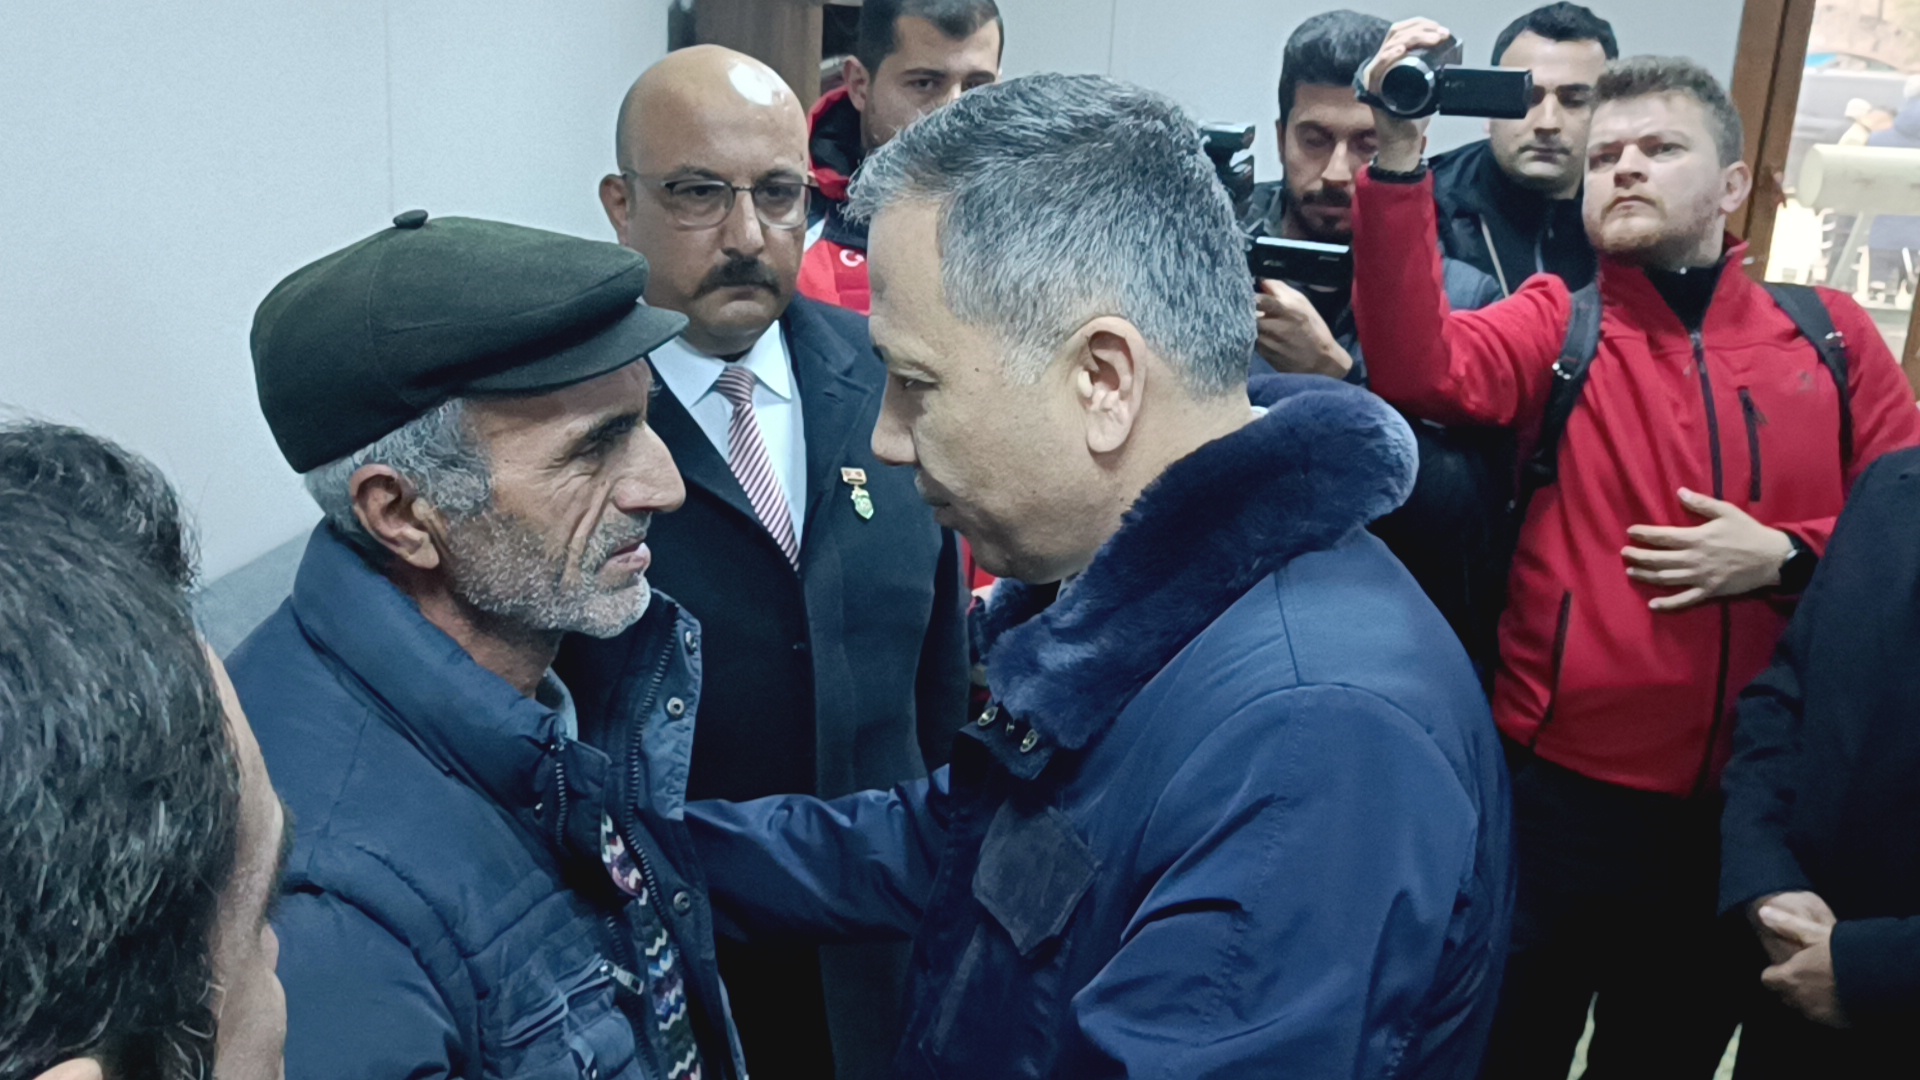 İçişleri Bakanı Süleyman Soylu, İstanbul Valisi Ali Yerlikaya’ya eşlik ederek, şehit ailesine taziye ziyaretinde bulundu.